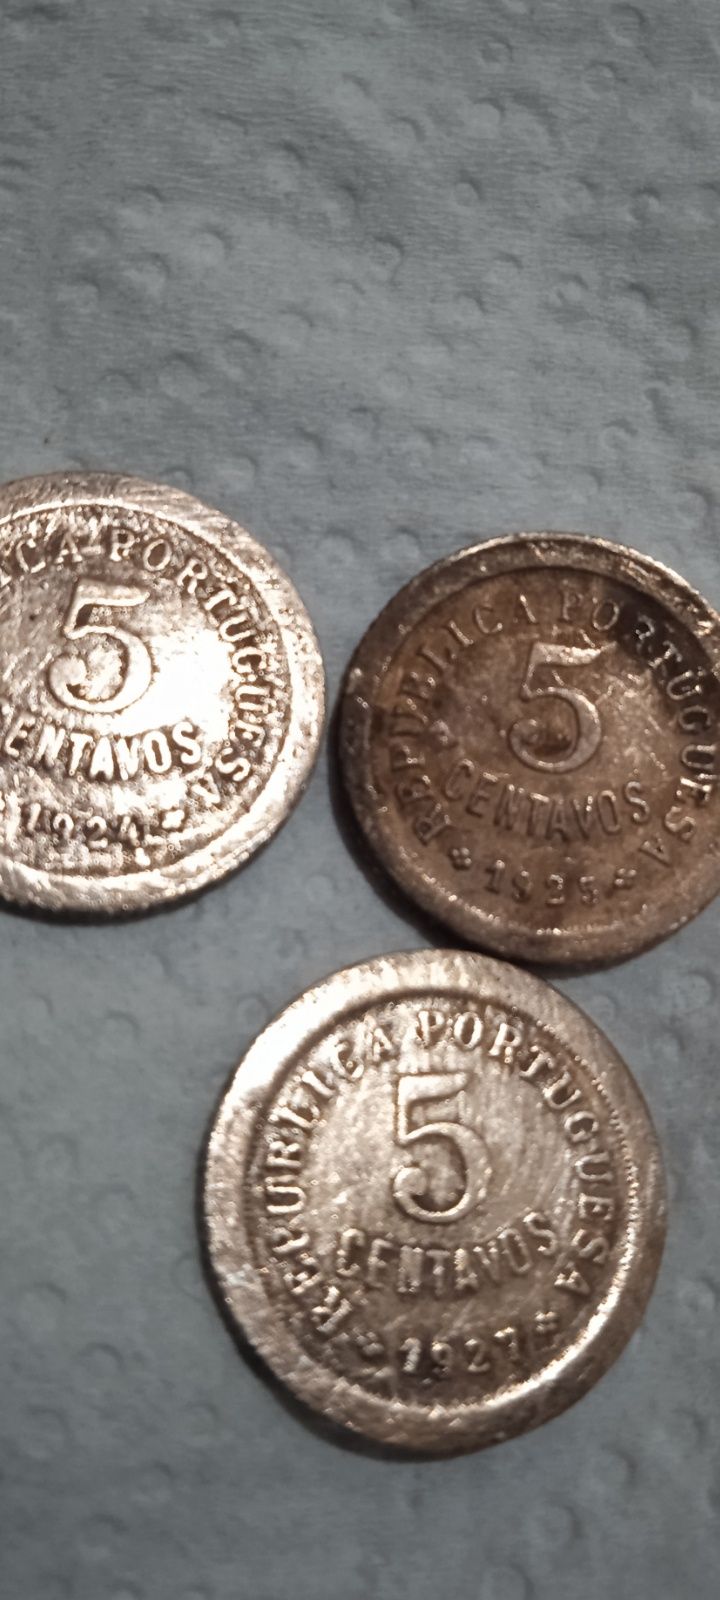 Vendo 1 moeda de 10 centavos , e 3 de 5 centavos 1924;1925;1927 bom